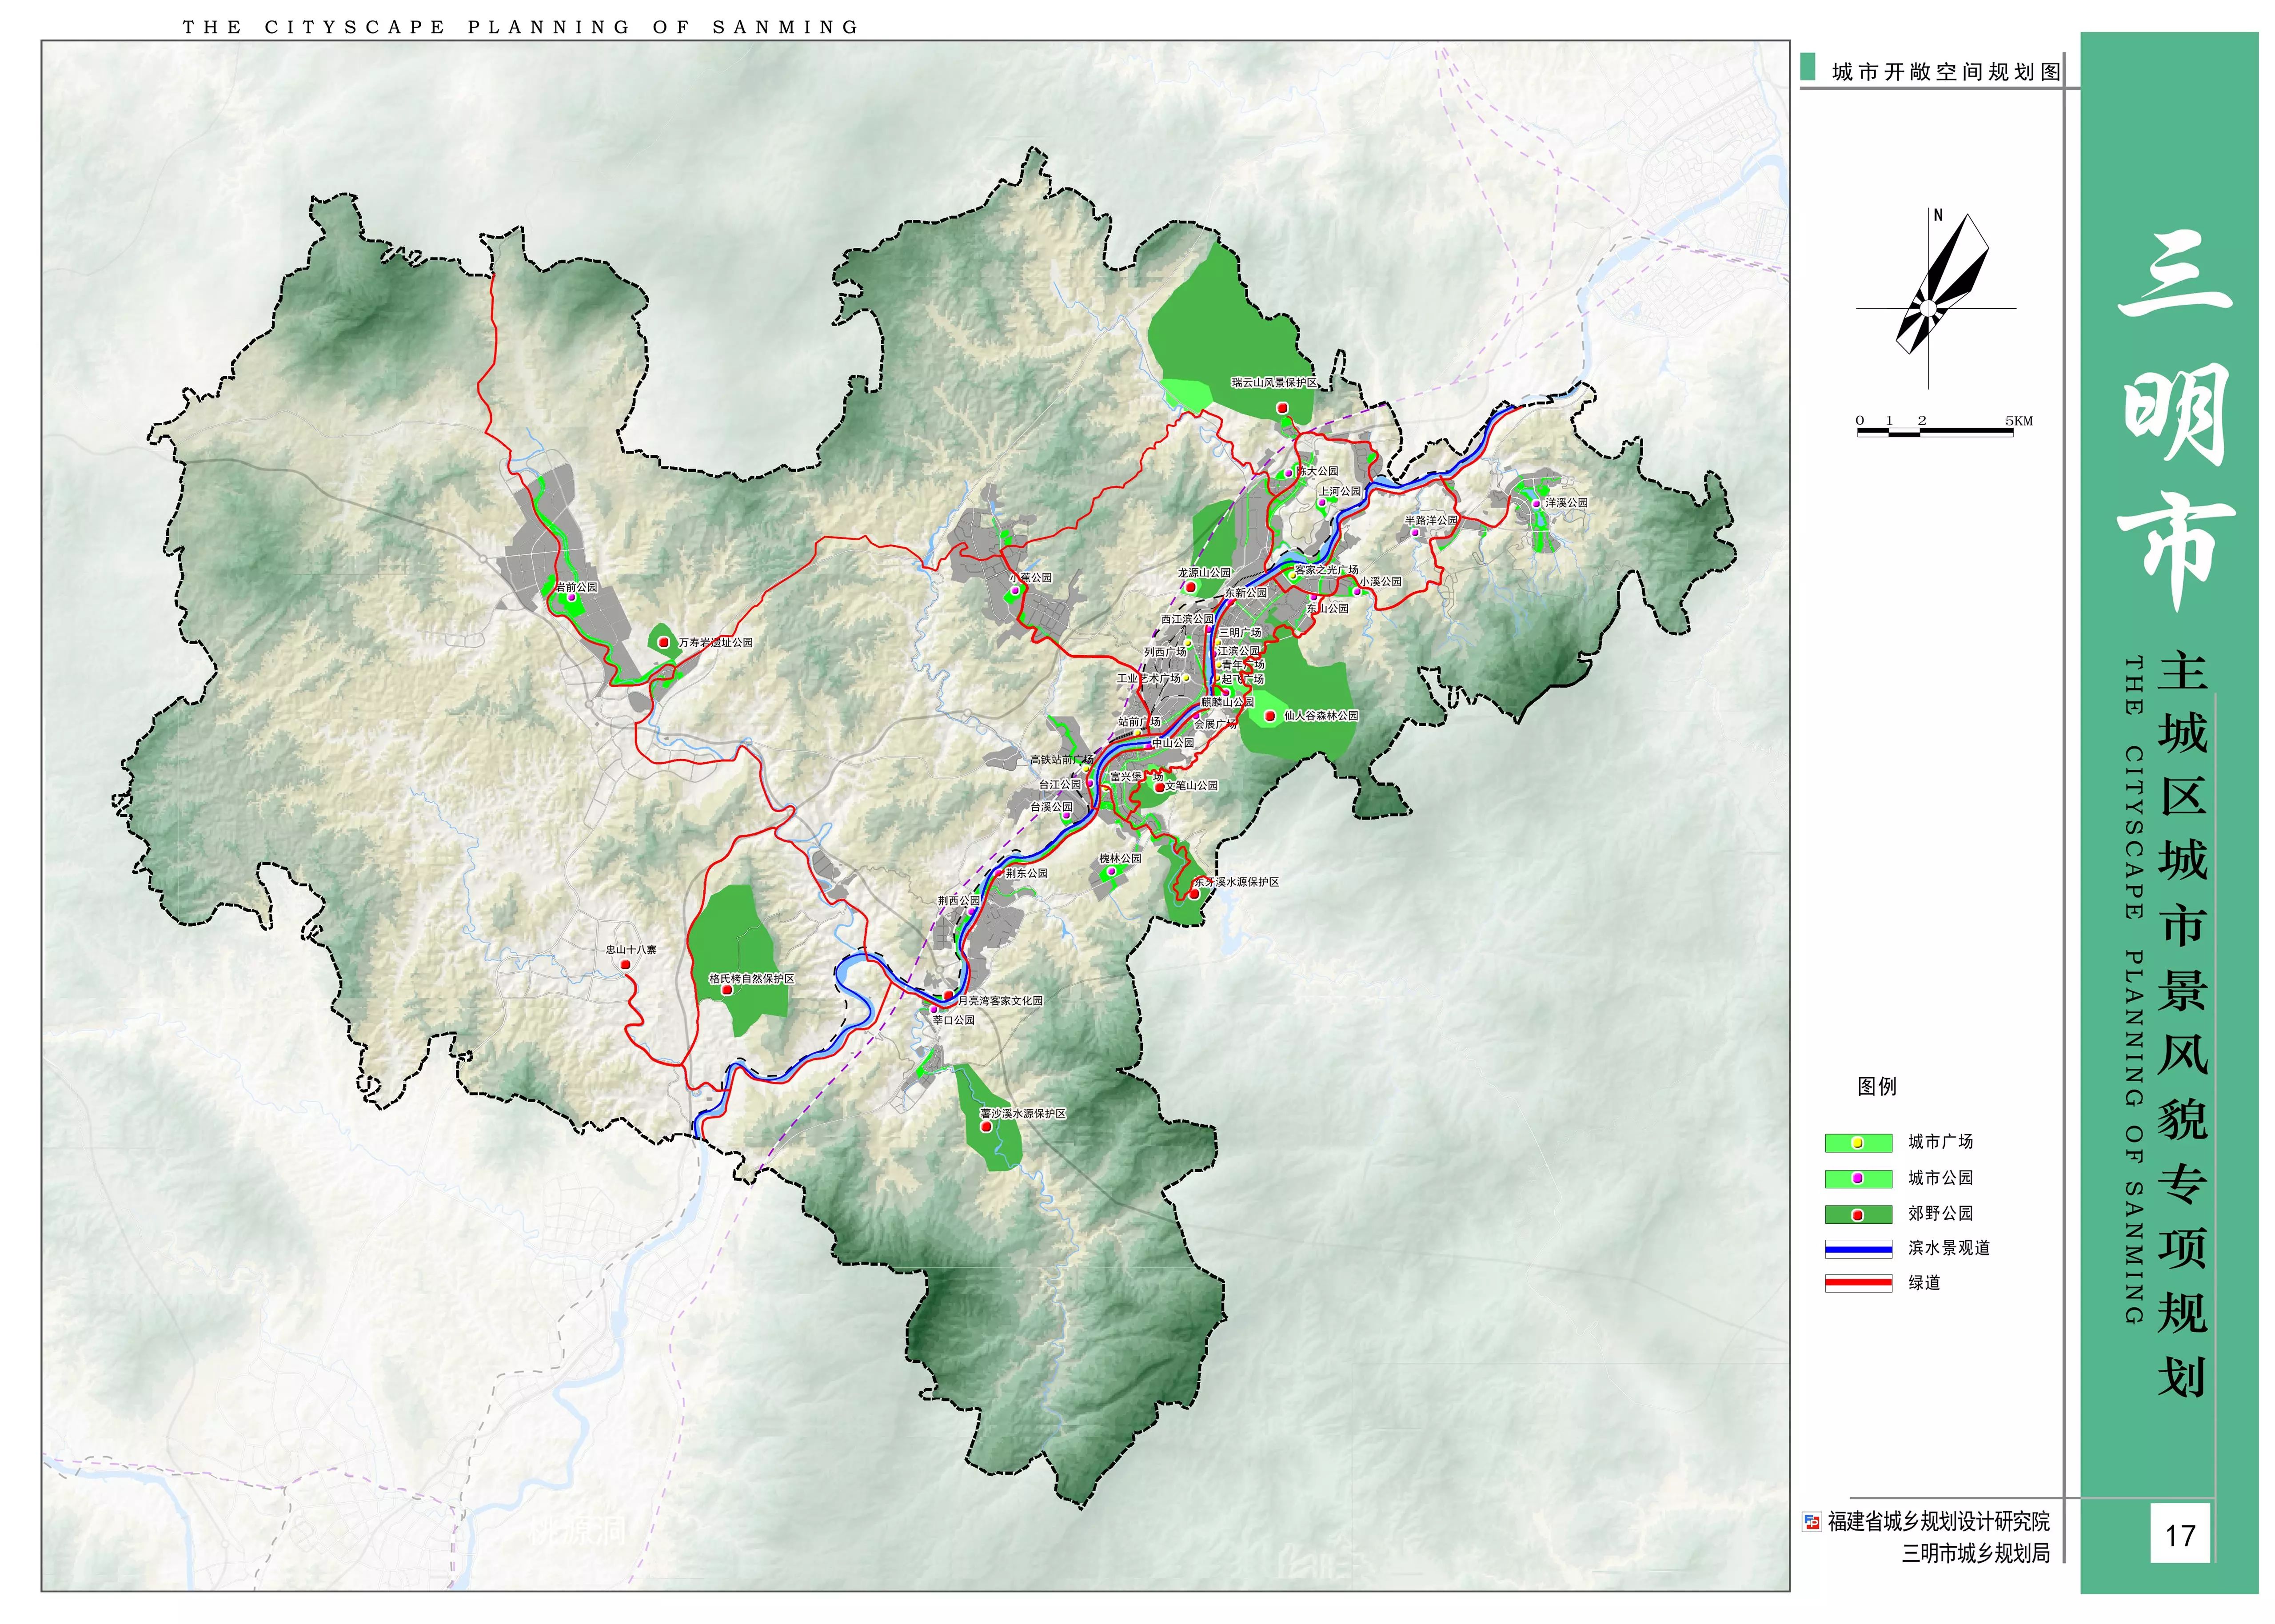 三明城市规划2030图片